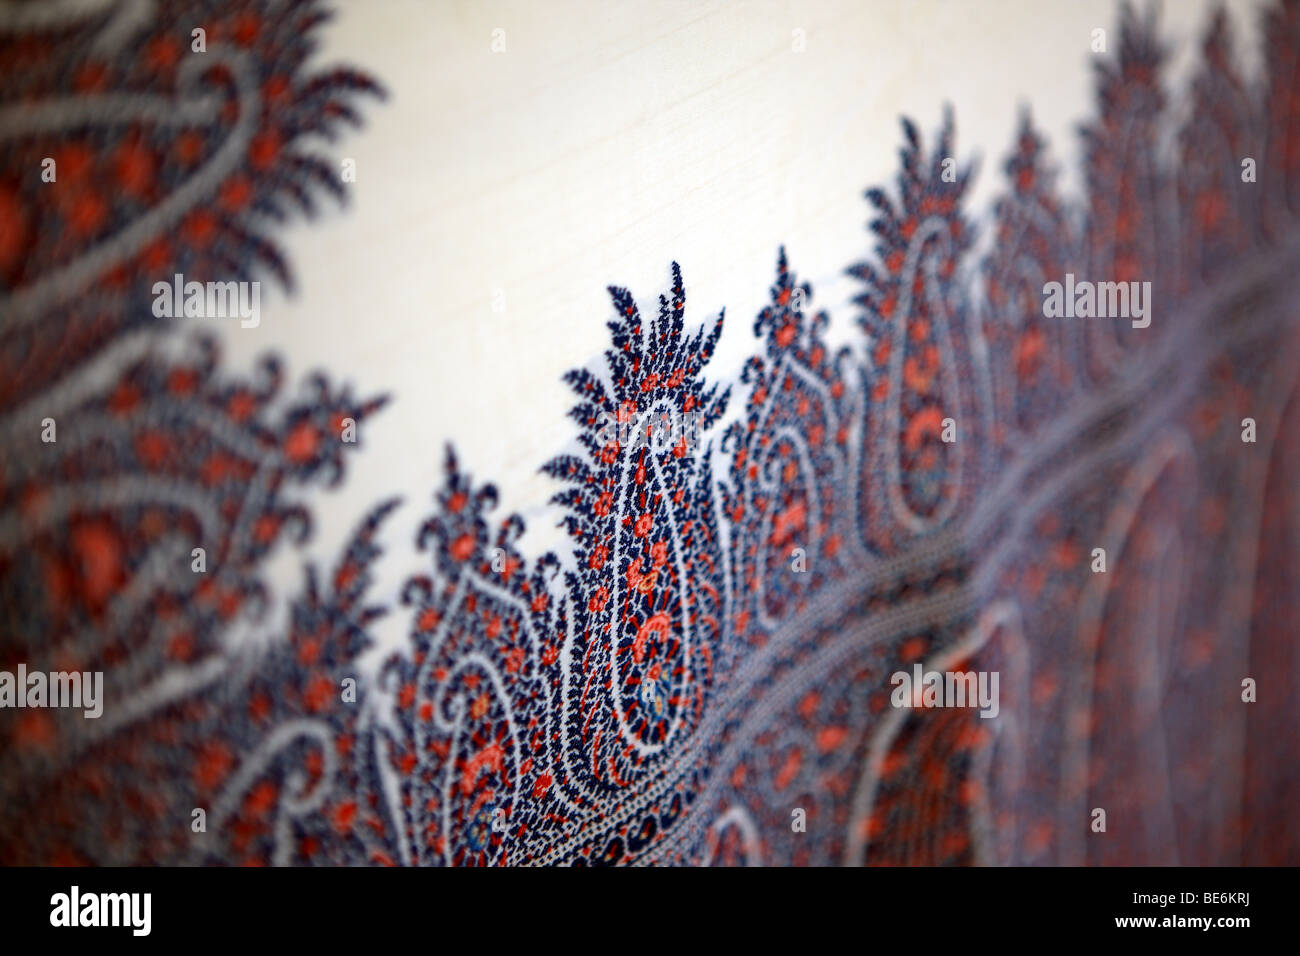 Paisley pattern shawl Stock Photo